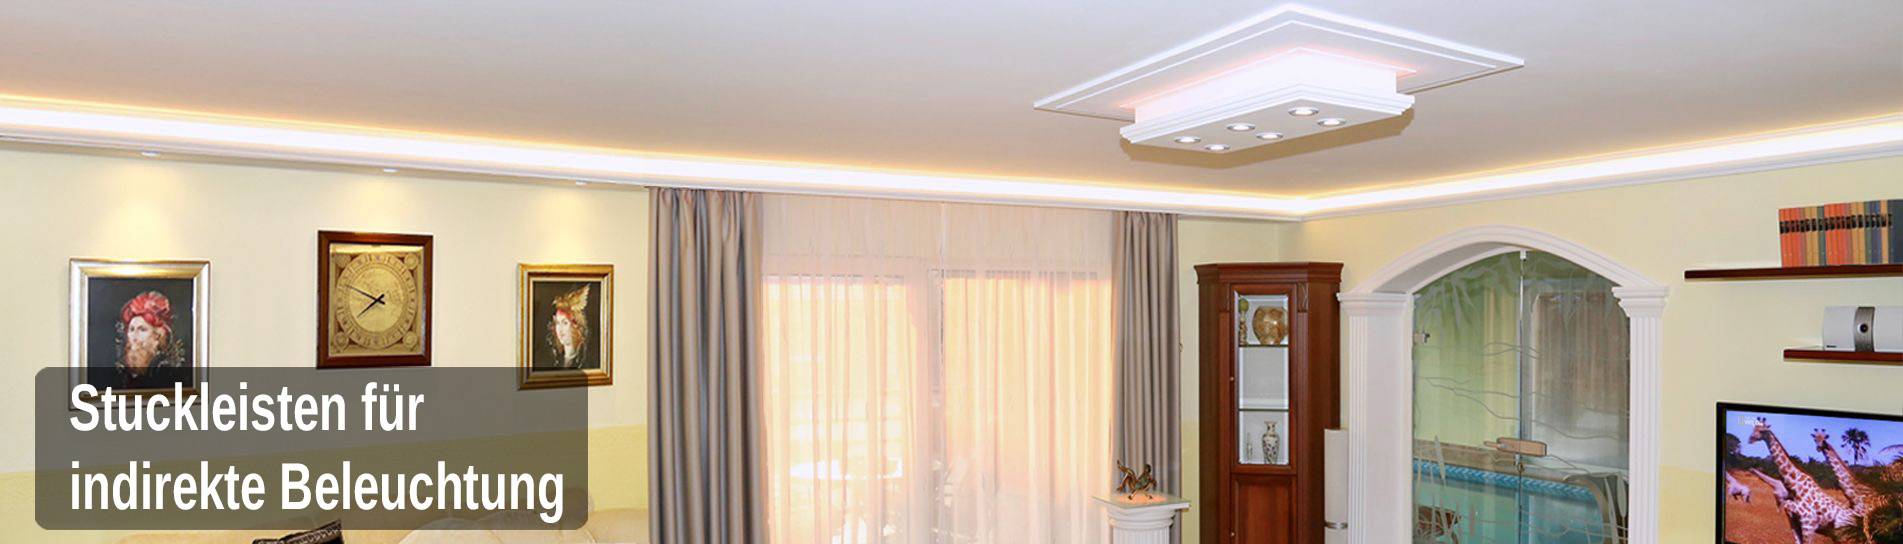 indirekte Beleuchtung mit Styroporstuck im Wohnzimmer